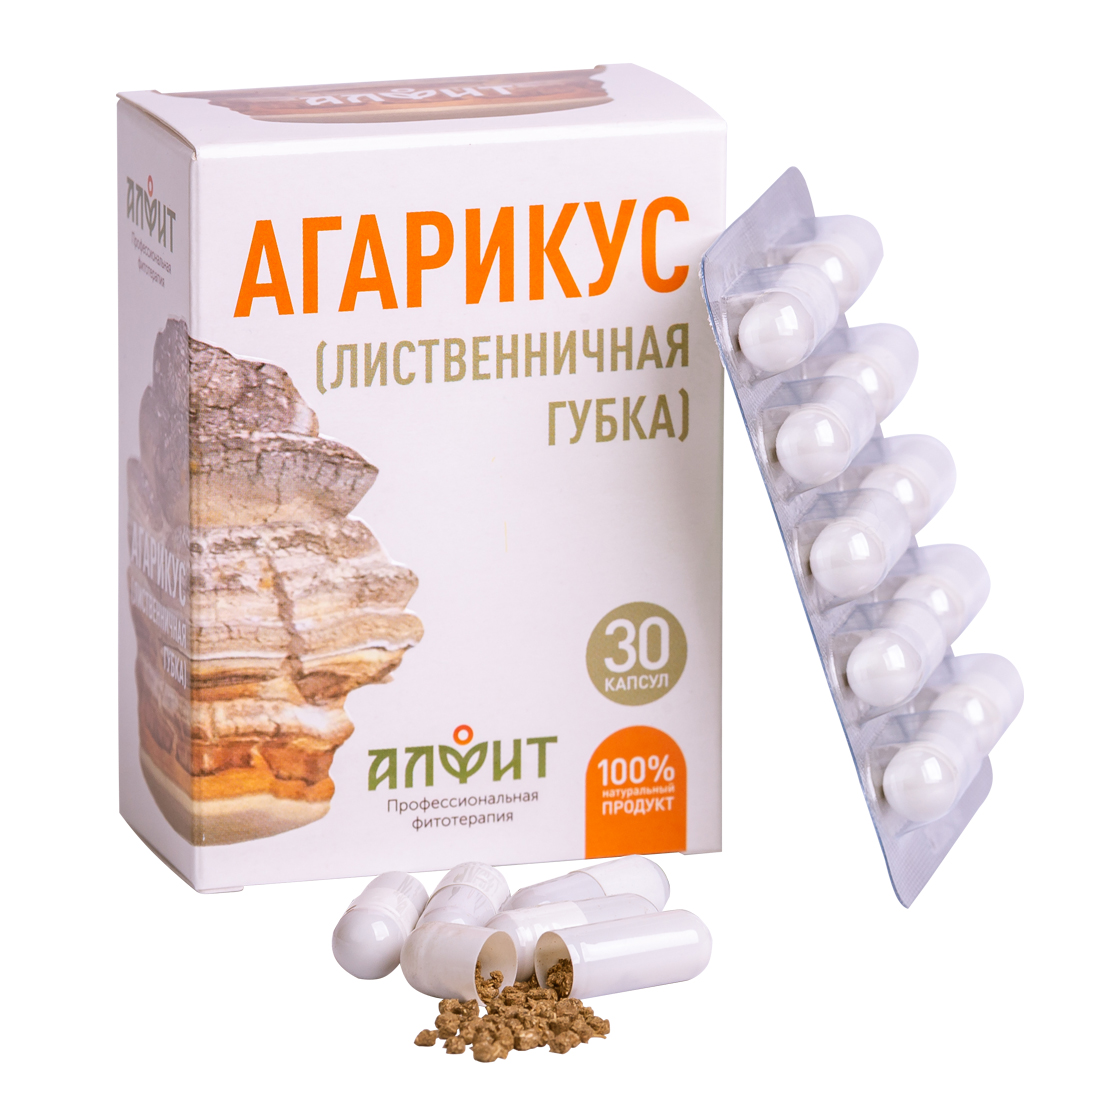 Концентрат на растительном сырье "Агарикус",  30 капсул по 500 мг, Алфит - фото 1